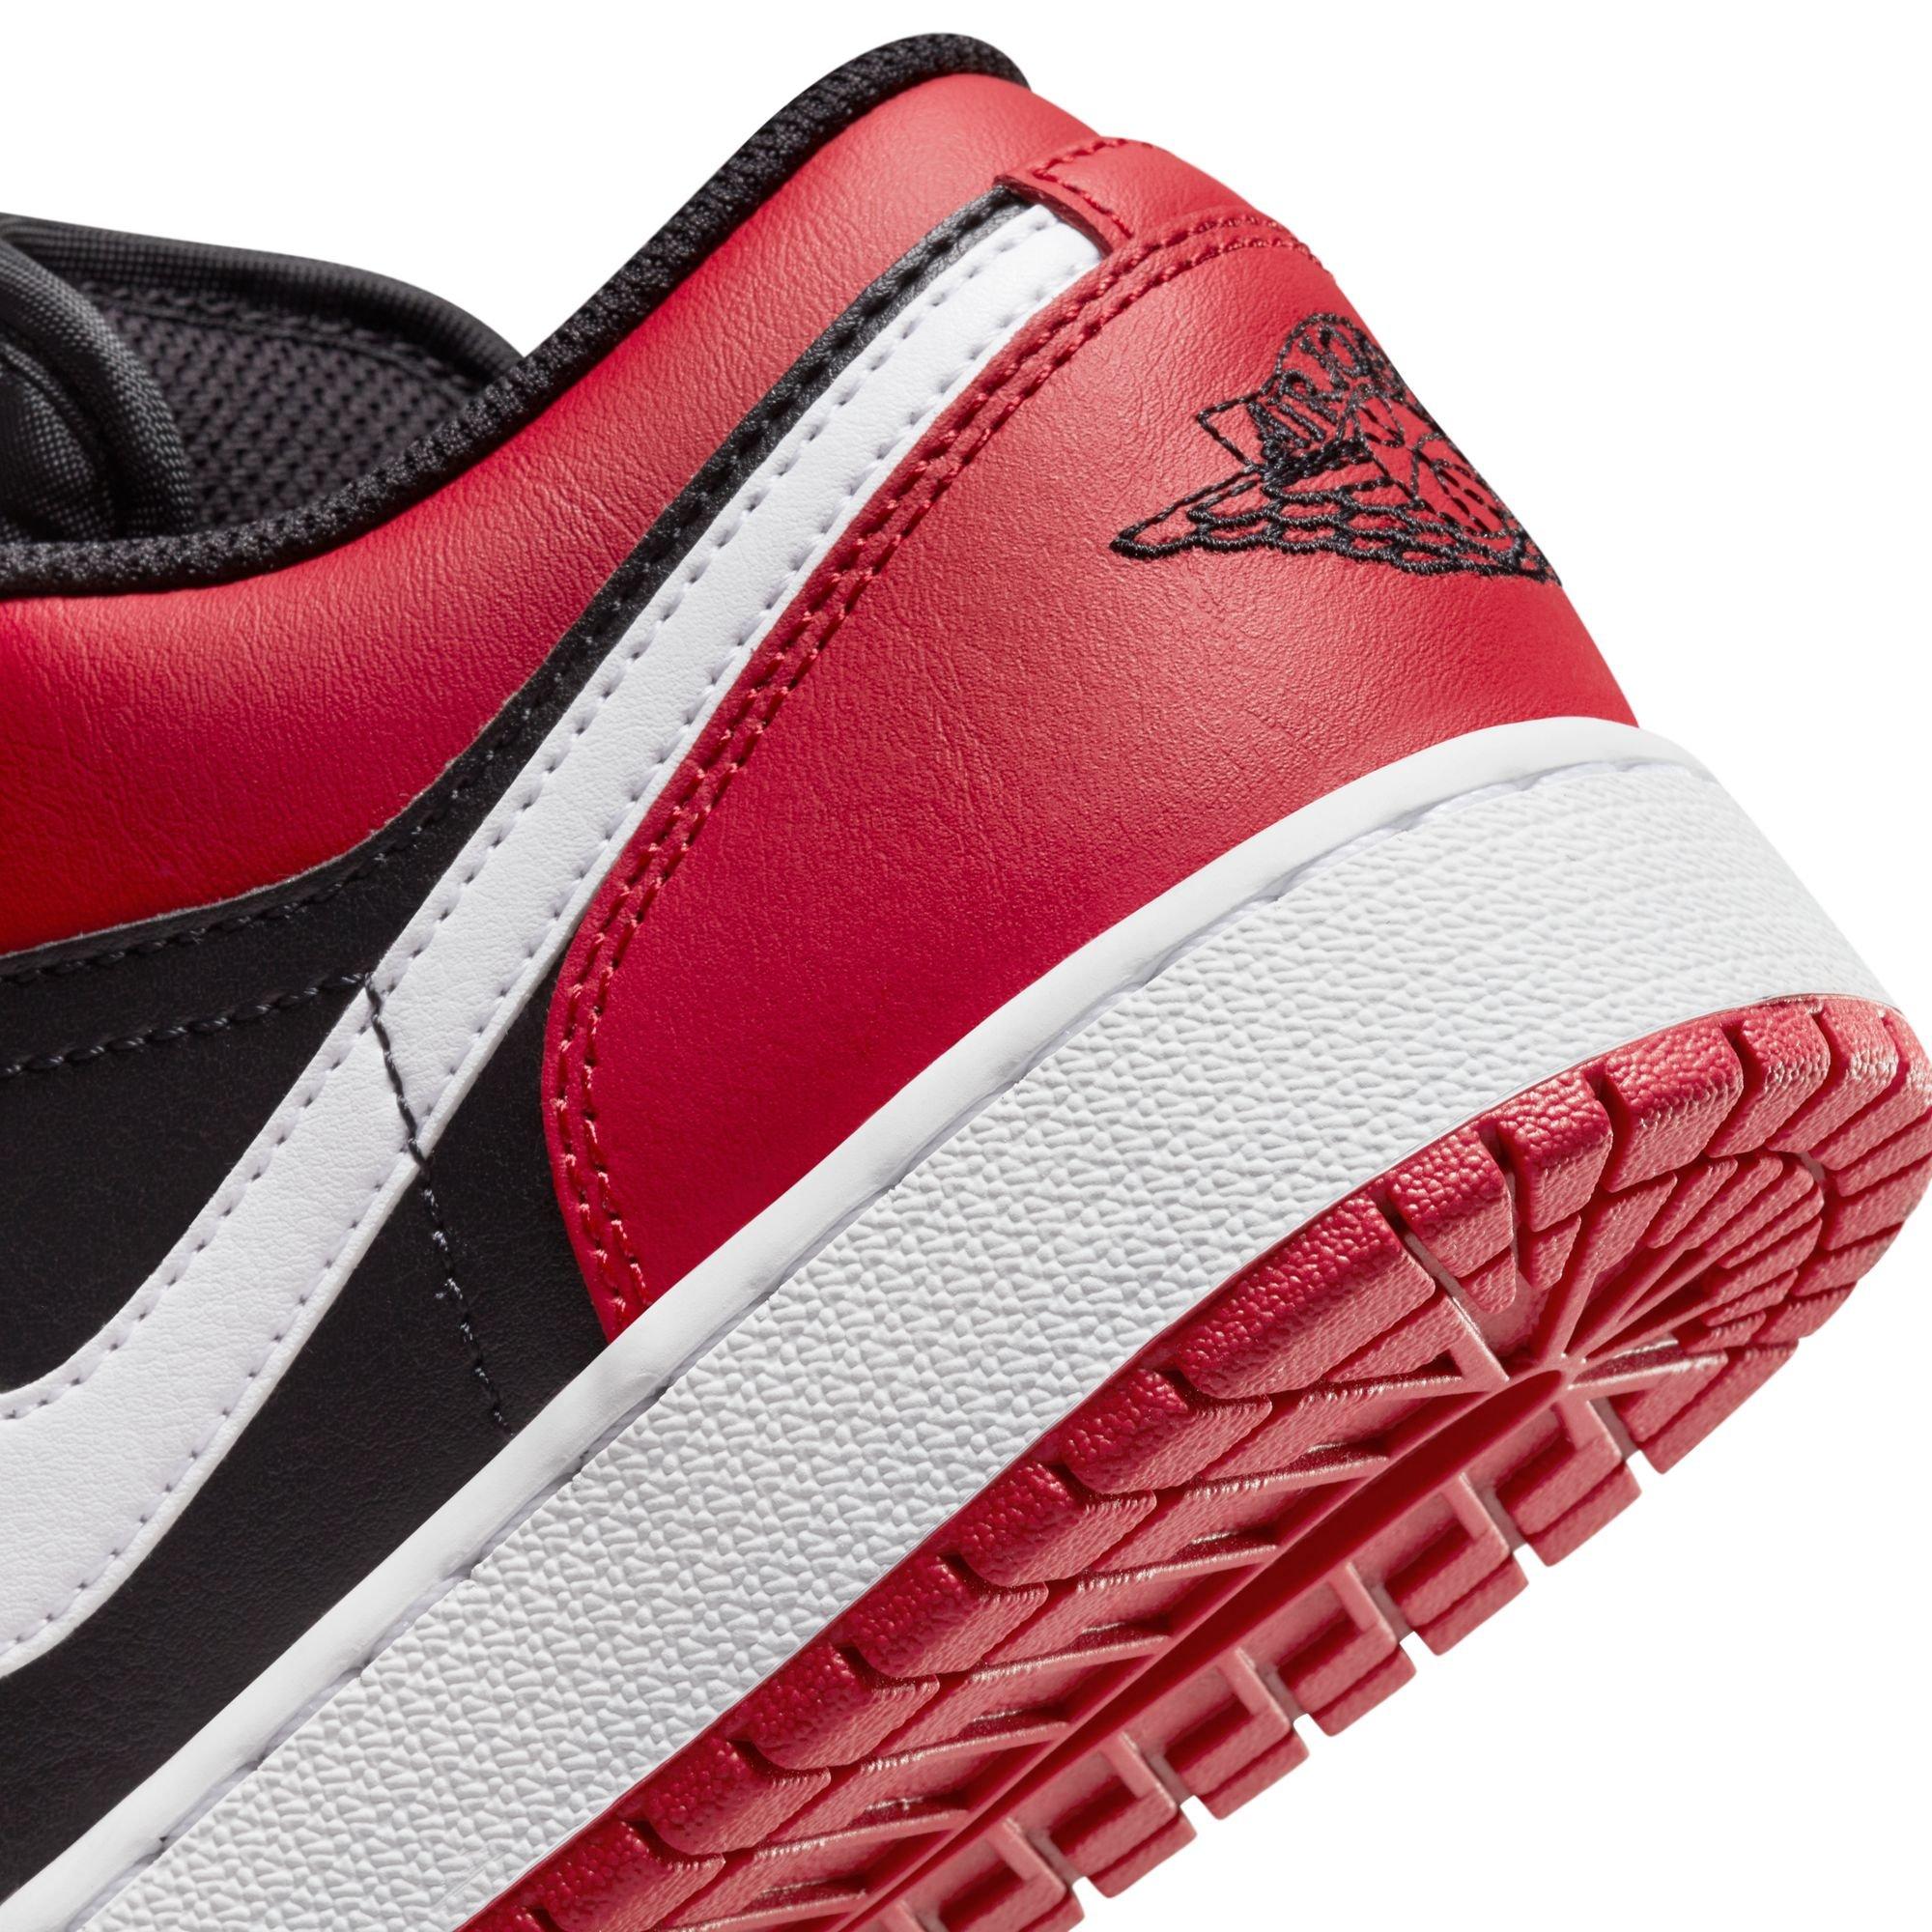 We're Getting Déjà Vu With The Air Jordan 1 Low Black Gym Red White -  Sneaker News